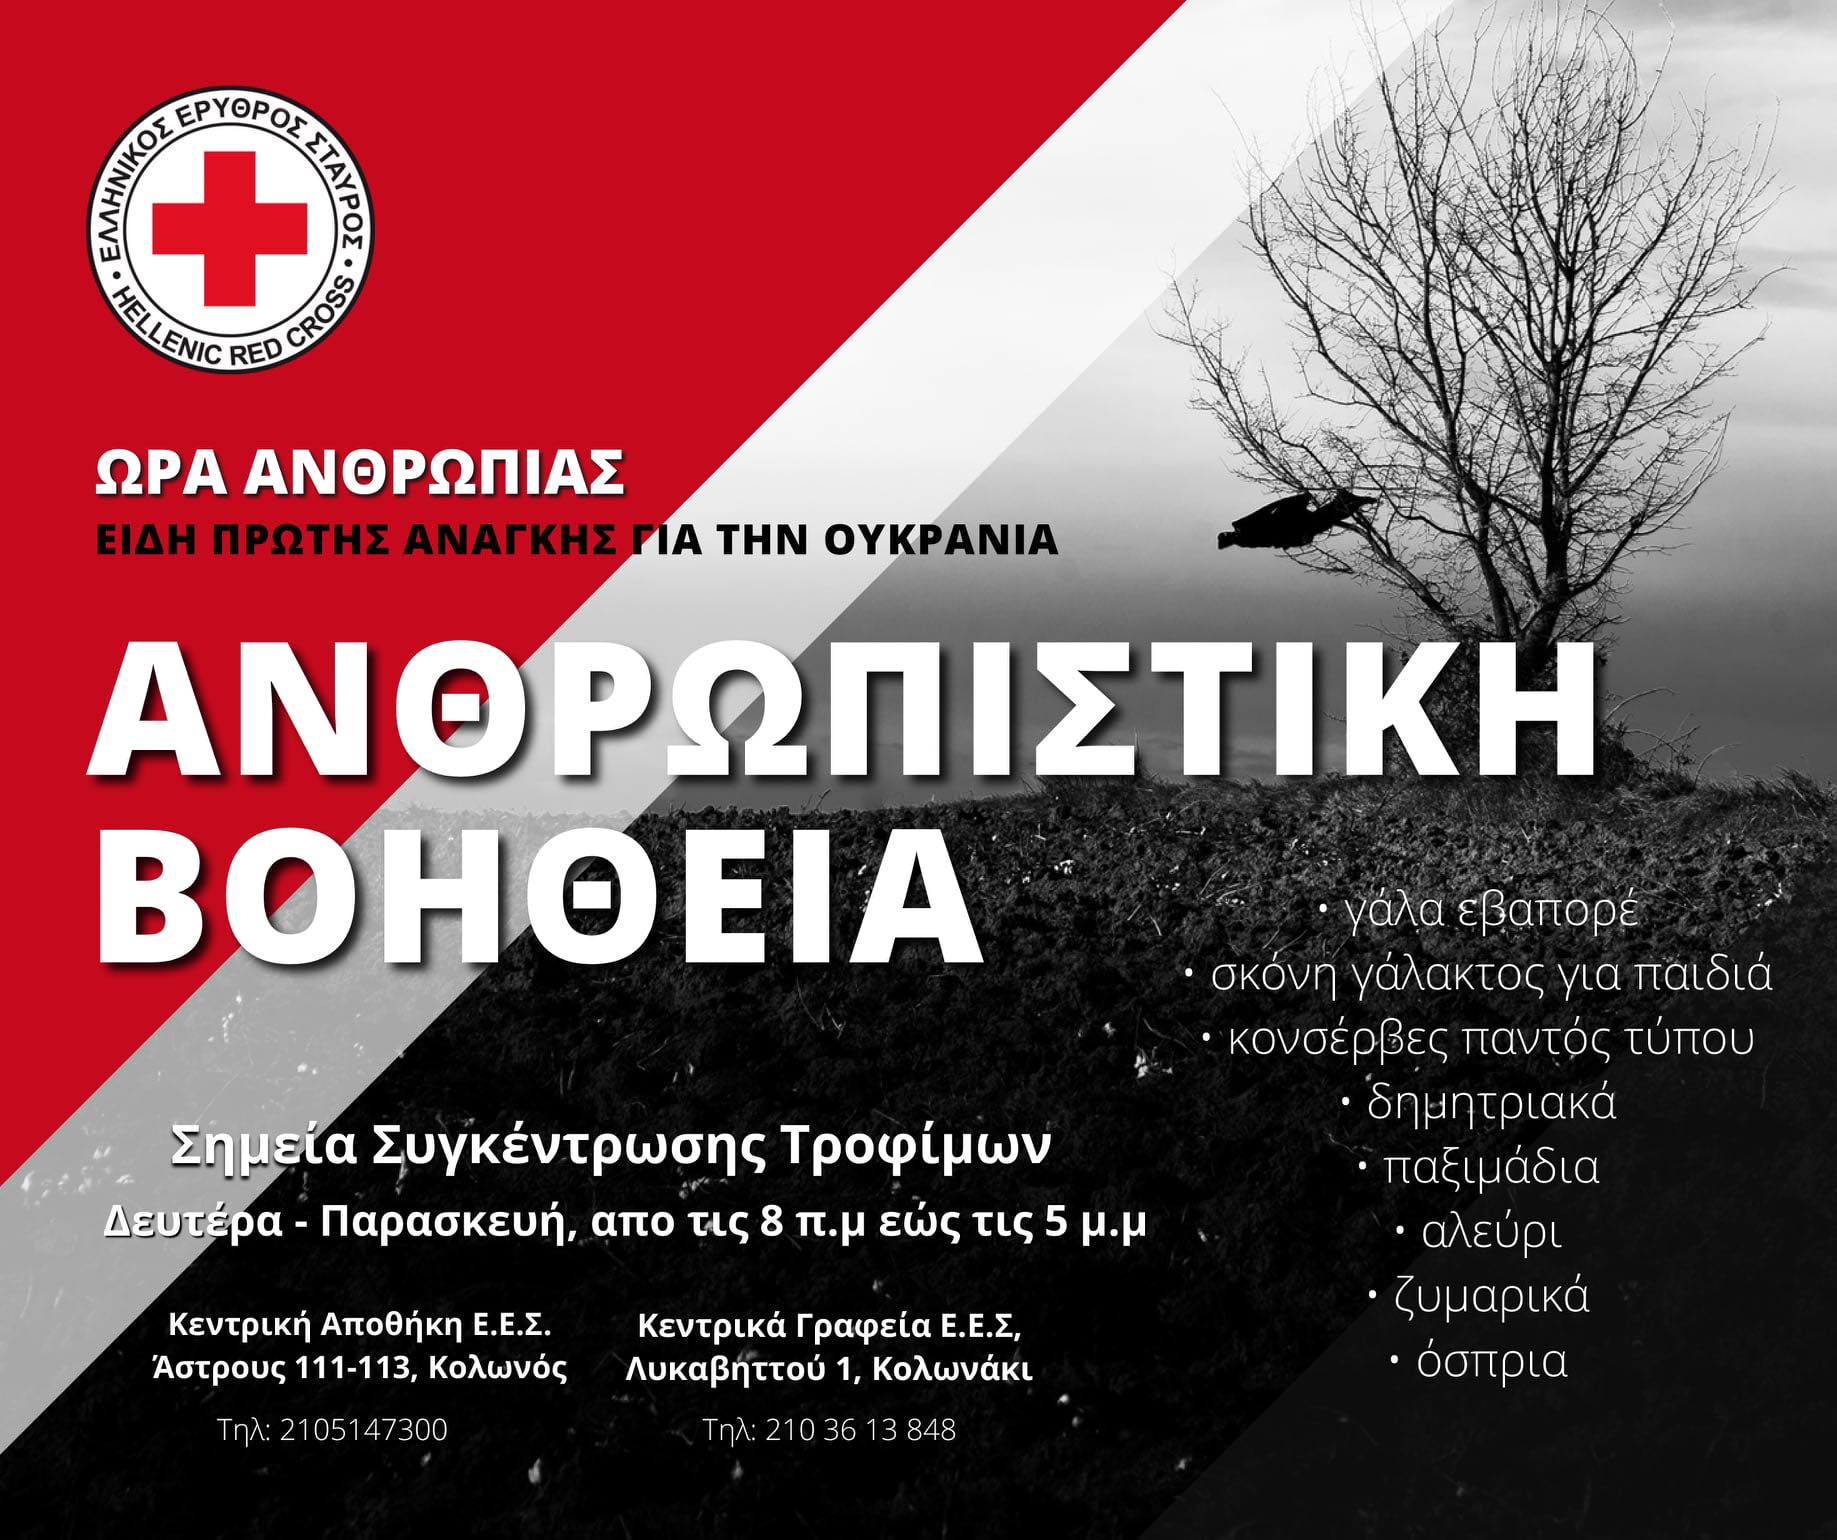 Δήμος Αν. Σάμου – Ερυθρός Σταυρός: Συγκέντρωση ειδών πρώτης ανάγκης για αποστολή στην Ουκρανία